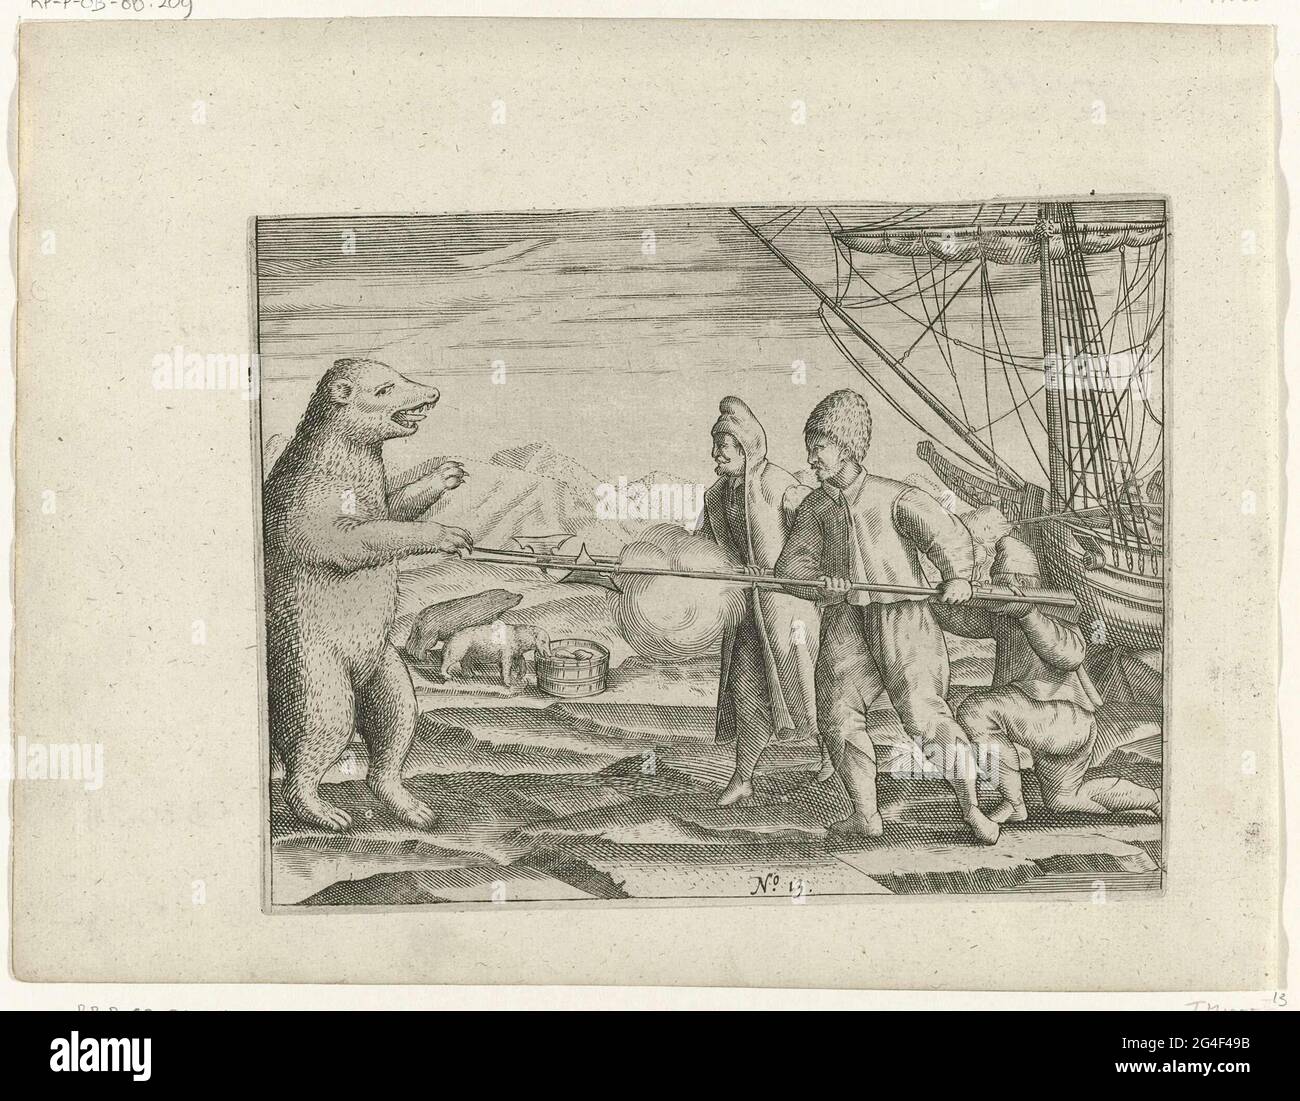 Trois ours polaires au navire coincé, le 15 septembre 1596. Un homme tire  sur l'ours polaire, le tireur est protégé par deux hommes à dos nu. Copies  des illustrations originales dans